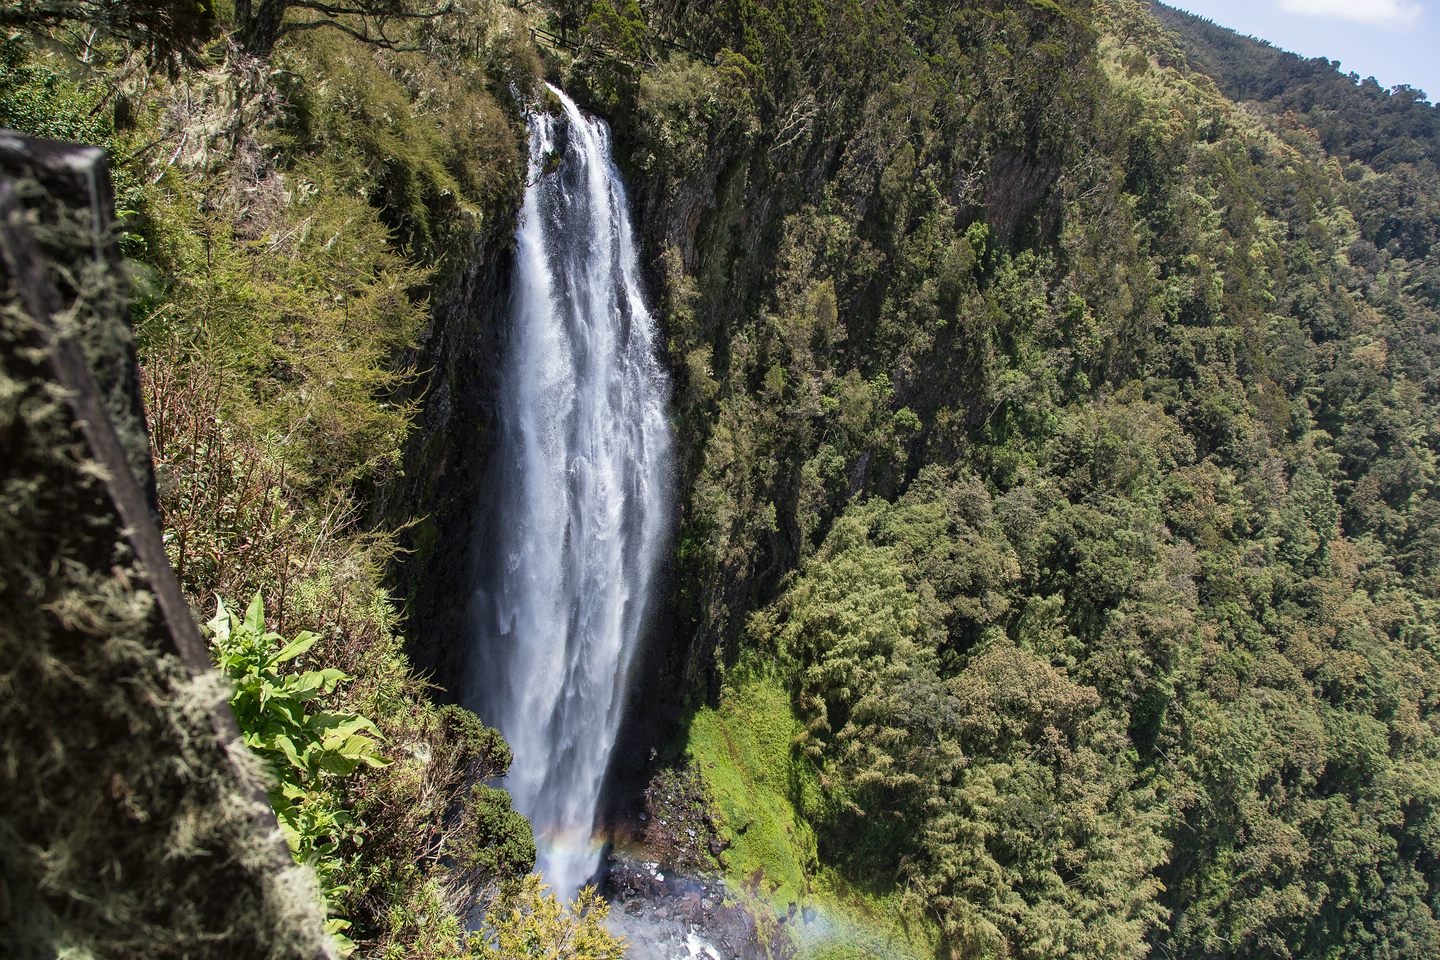 Karuruwaterfall